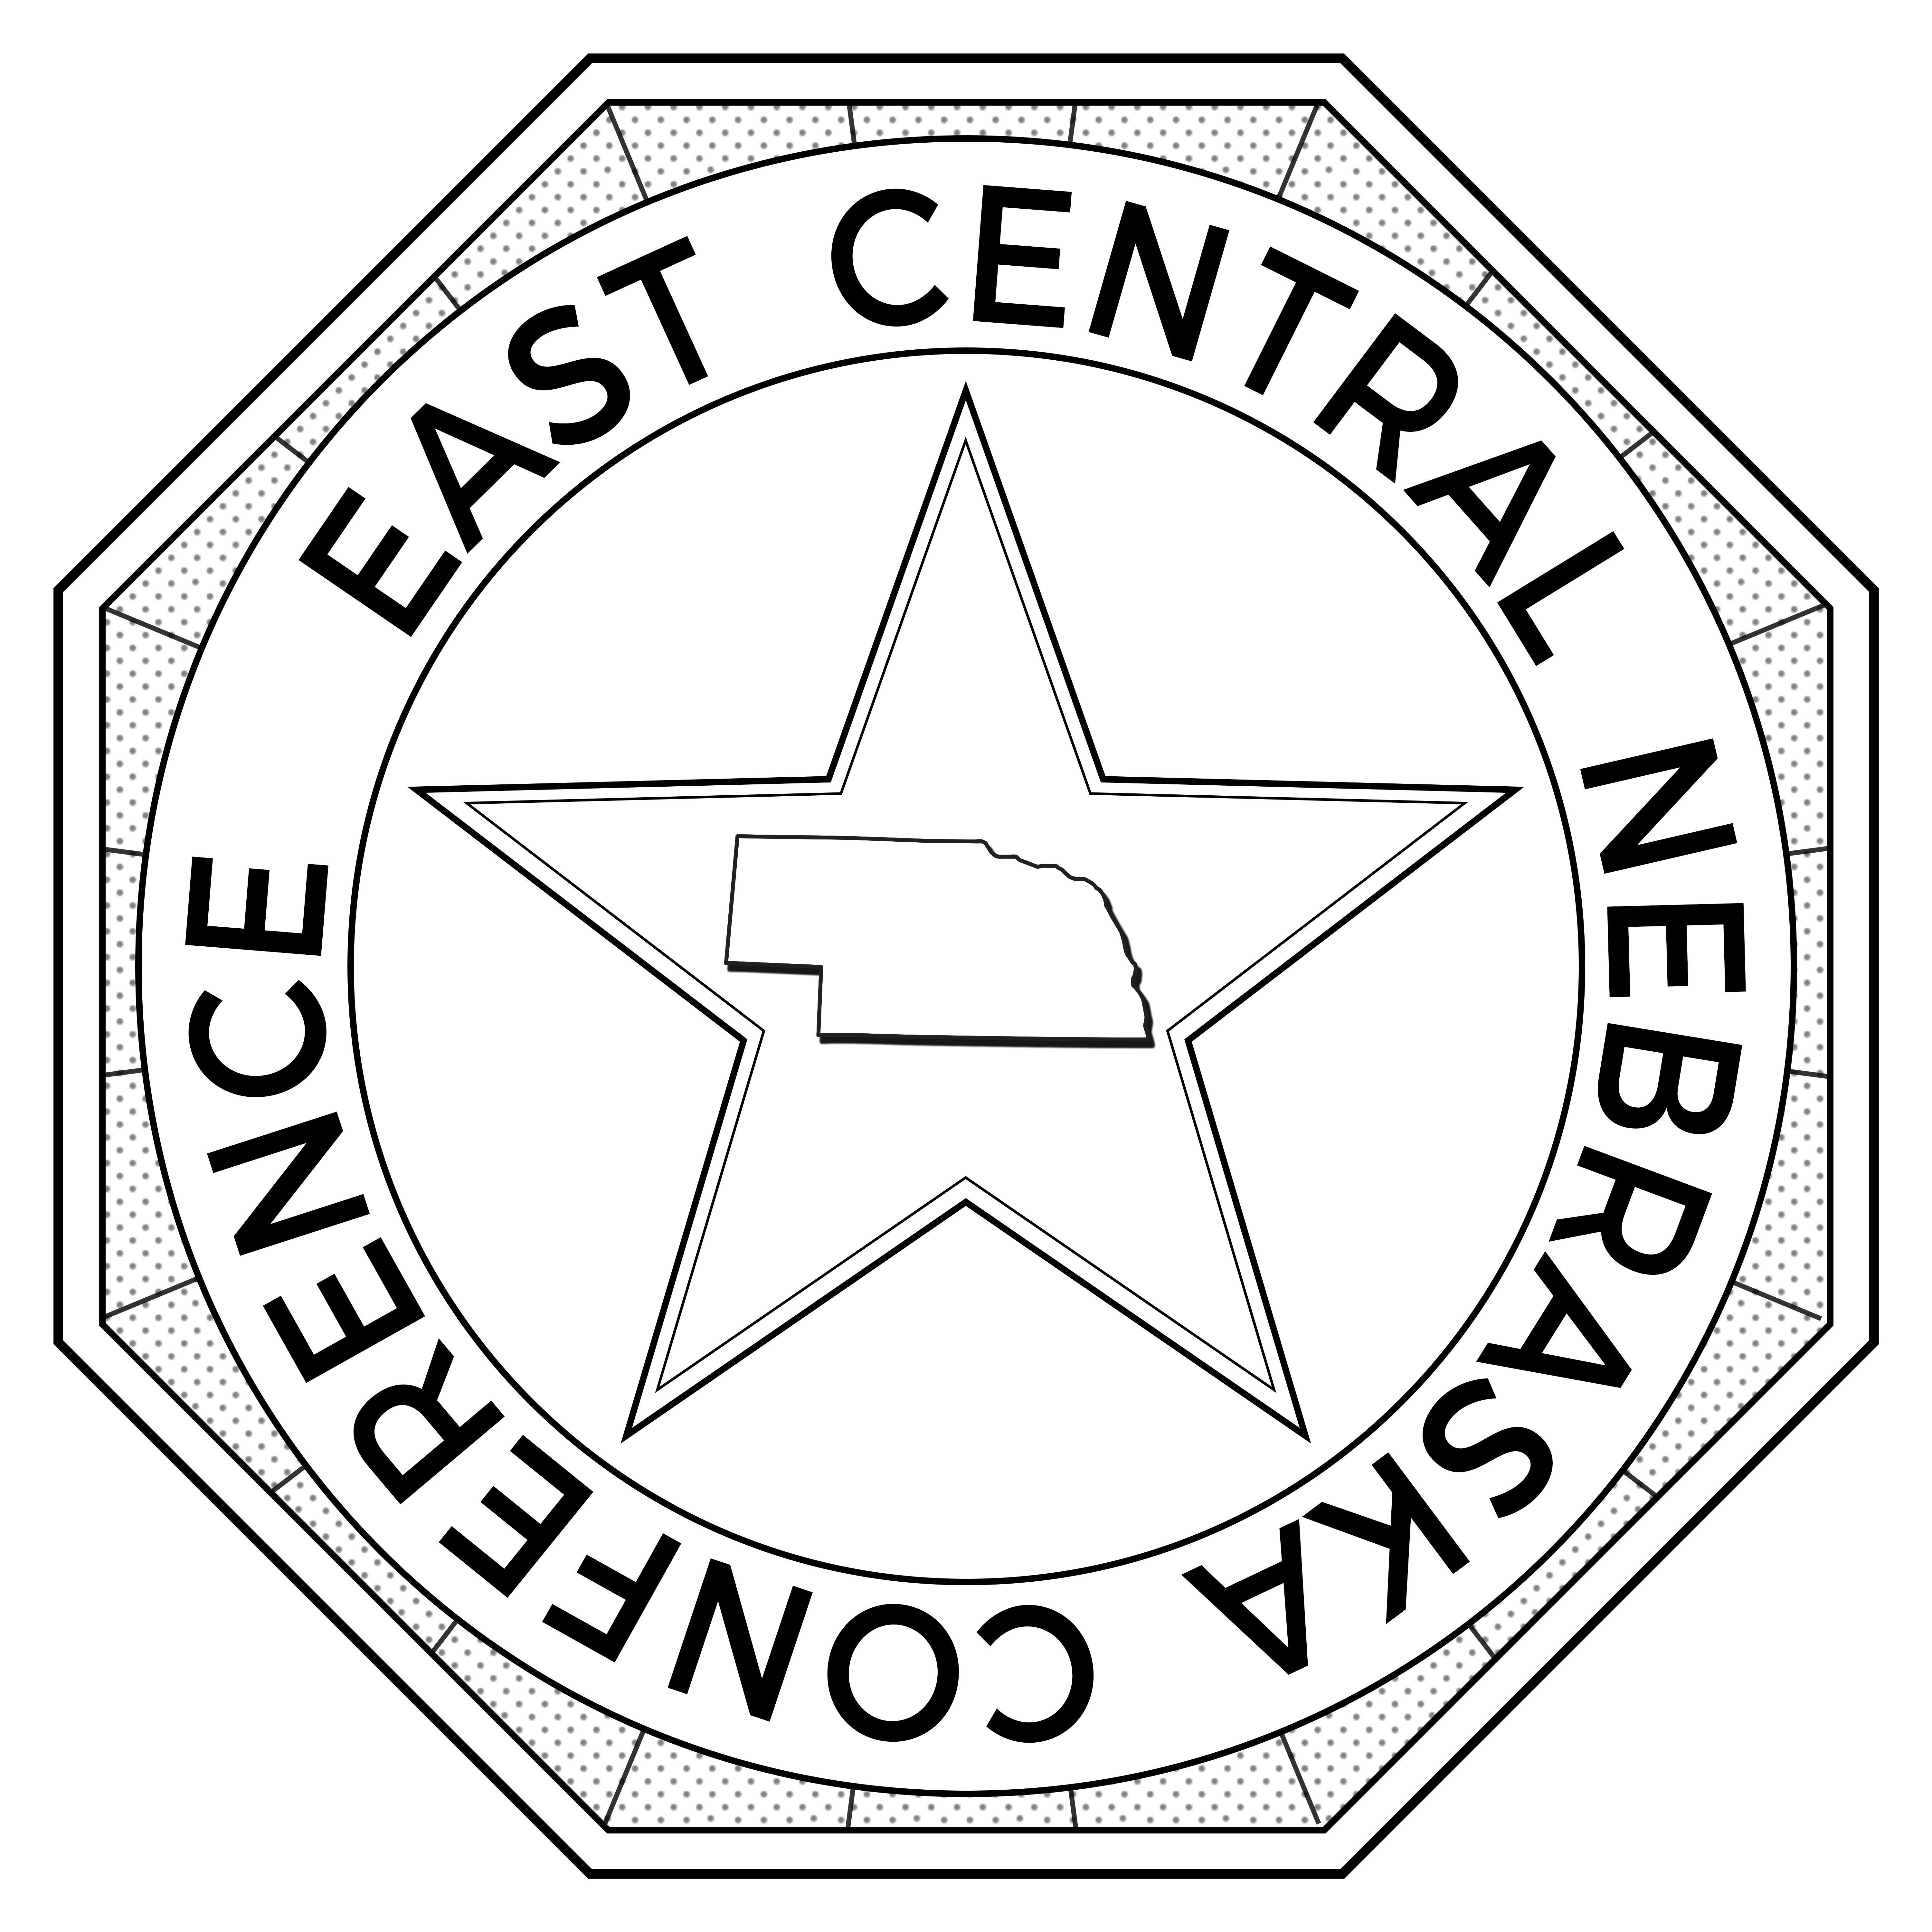 East Central Nebraska Conference